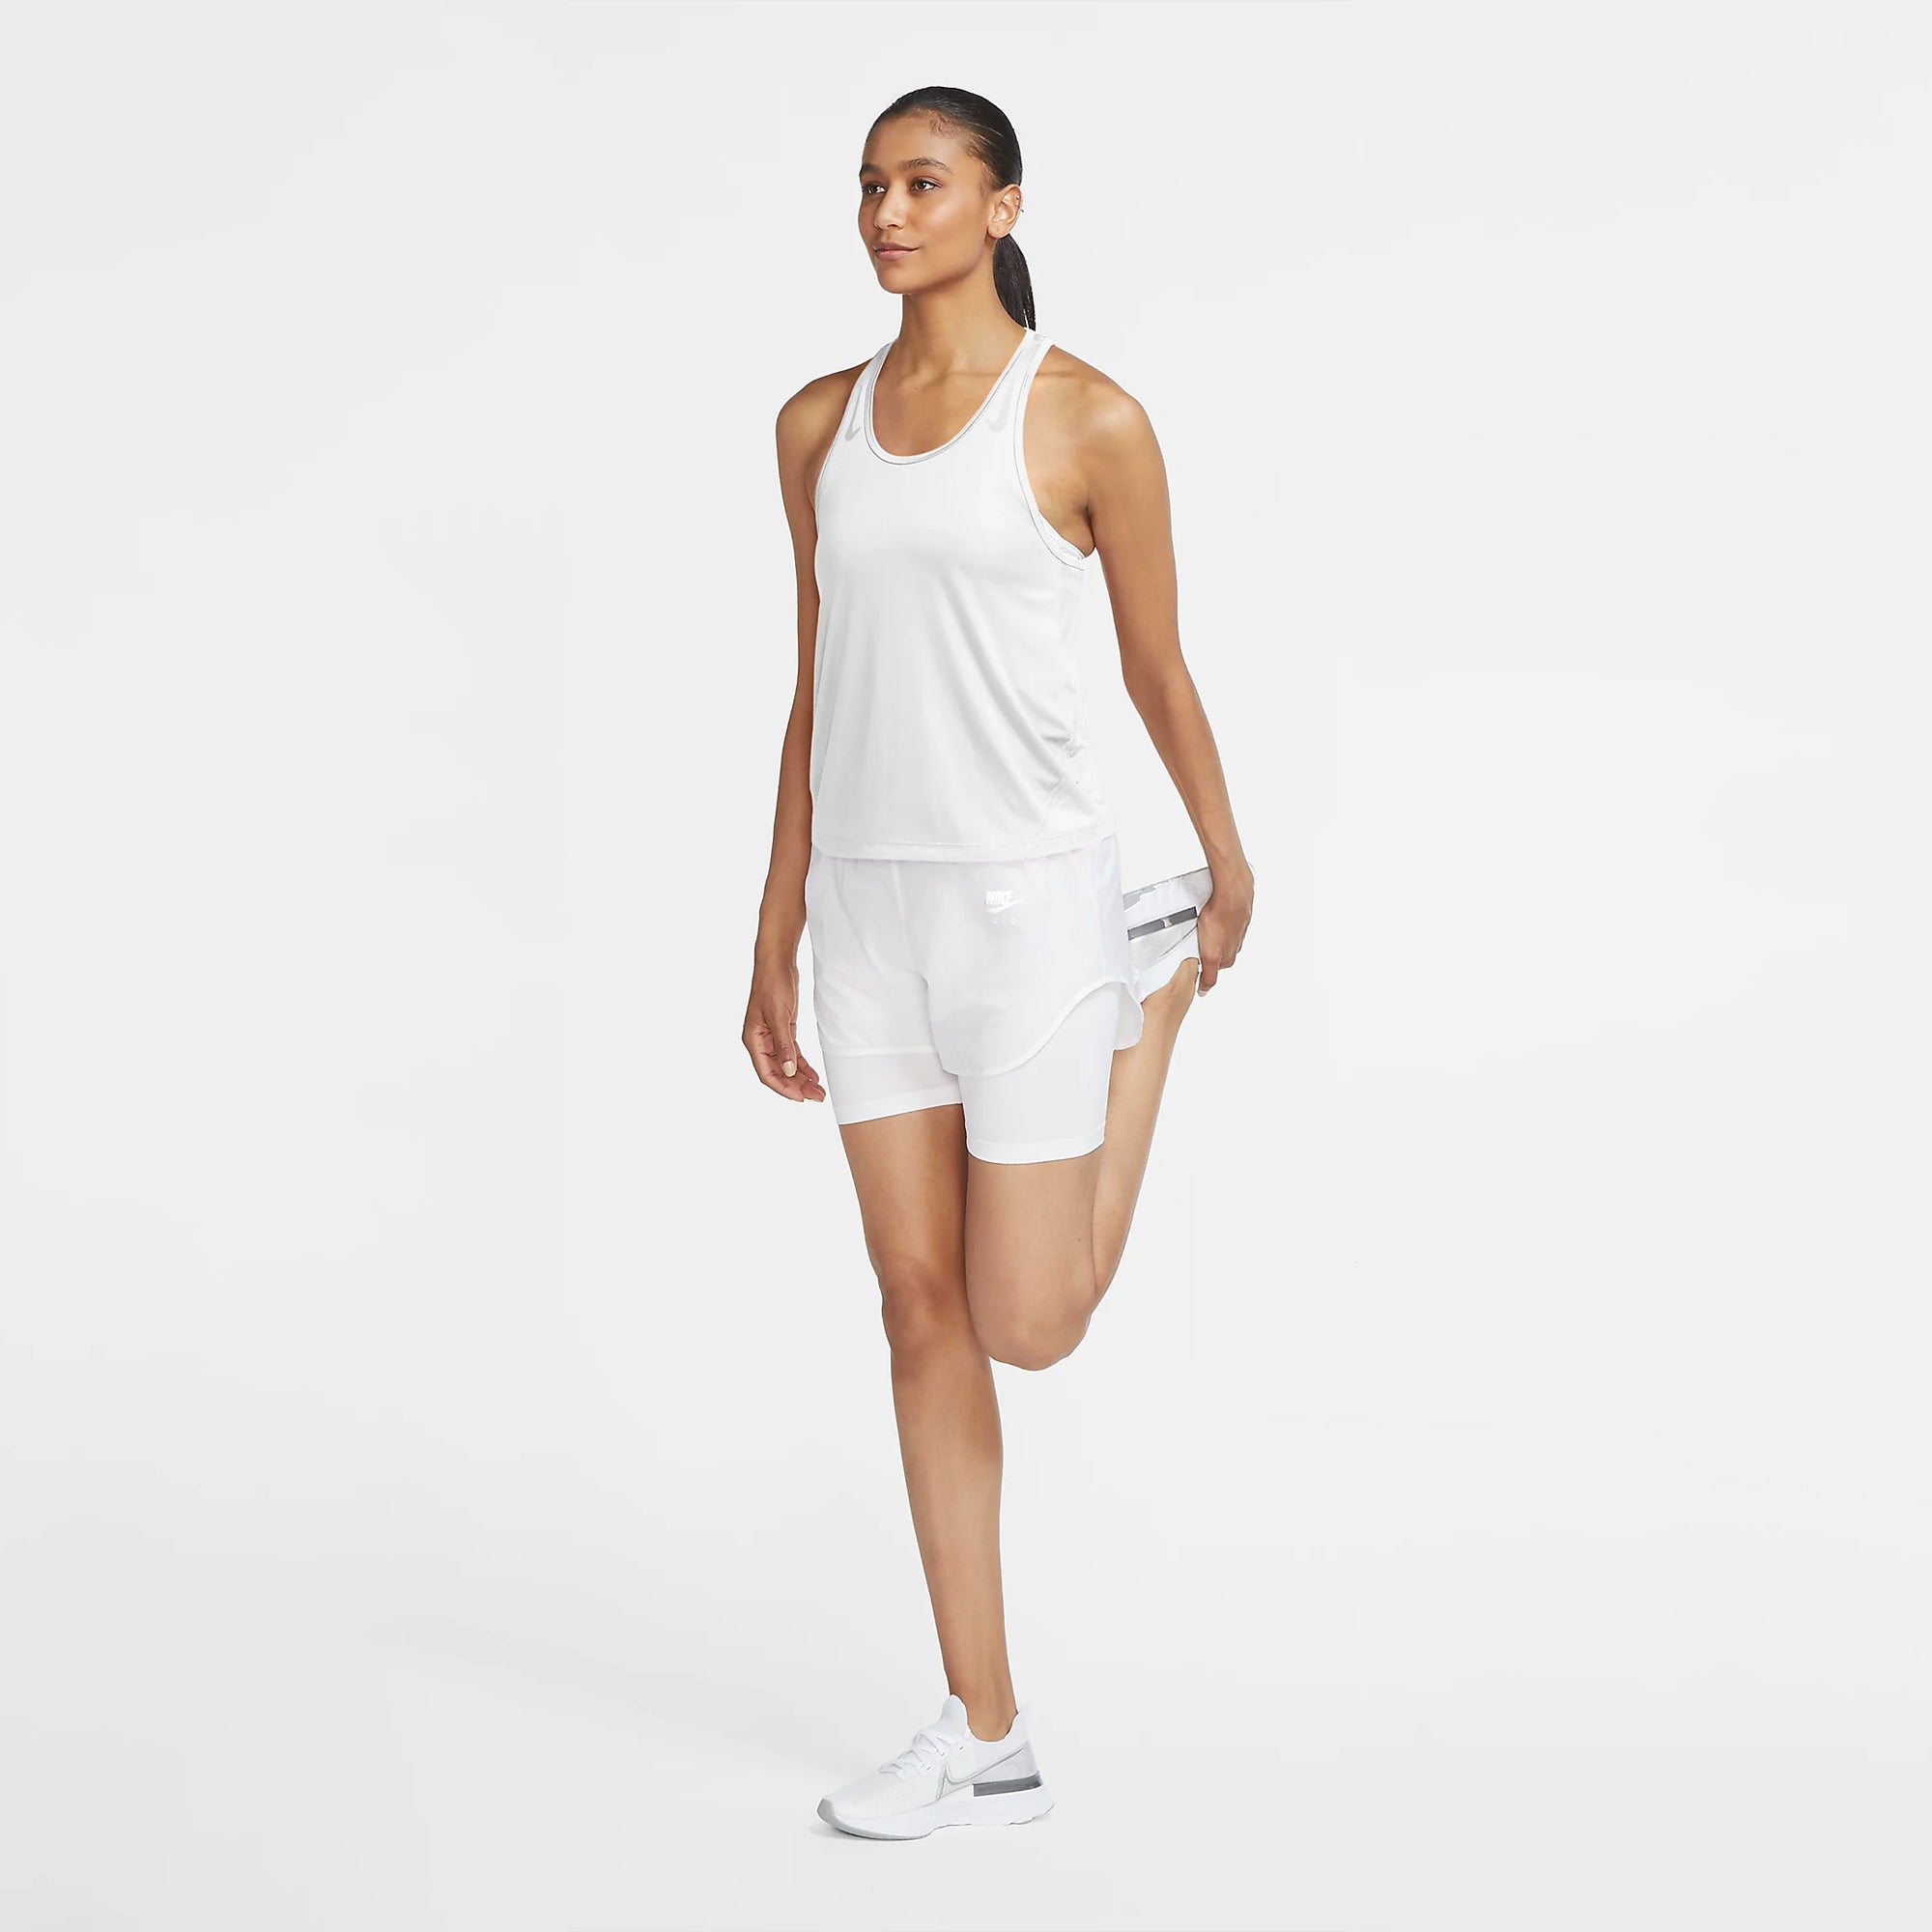 Nike Women's Miler Running Tank Top, Medium, White